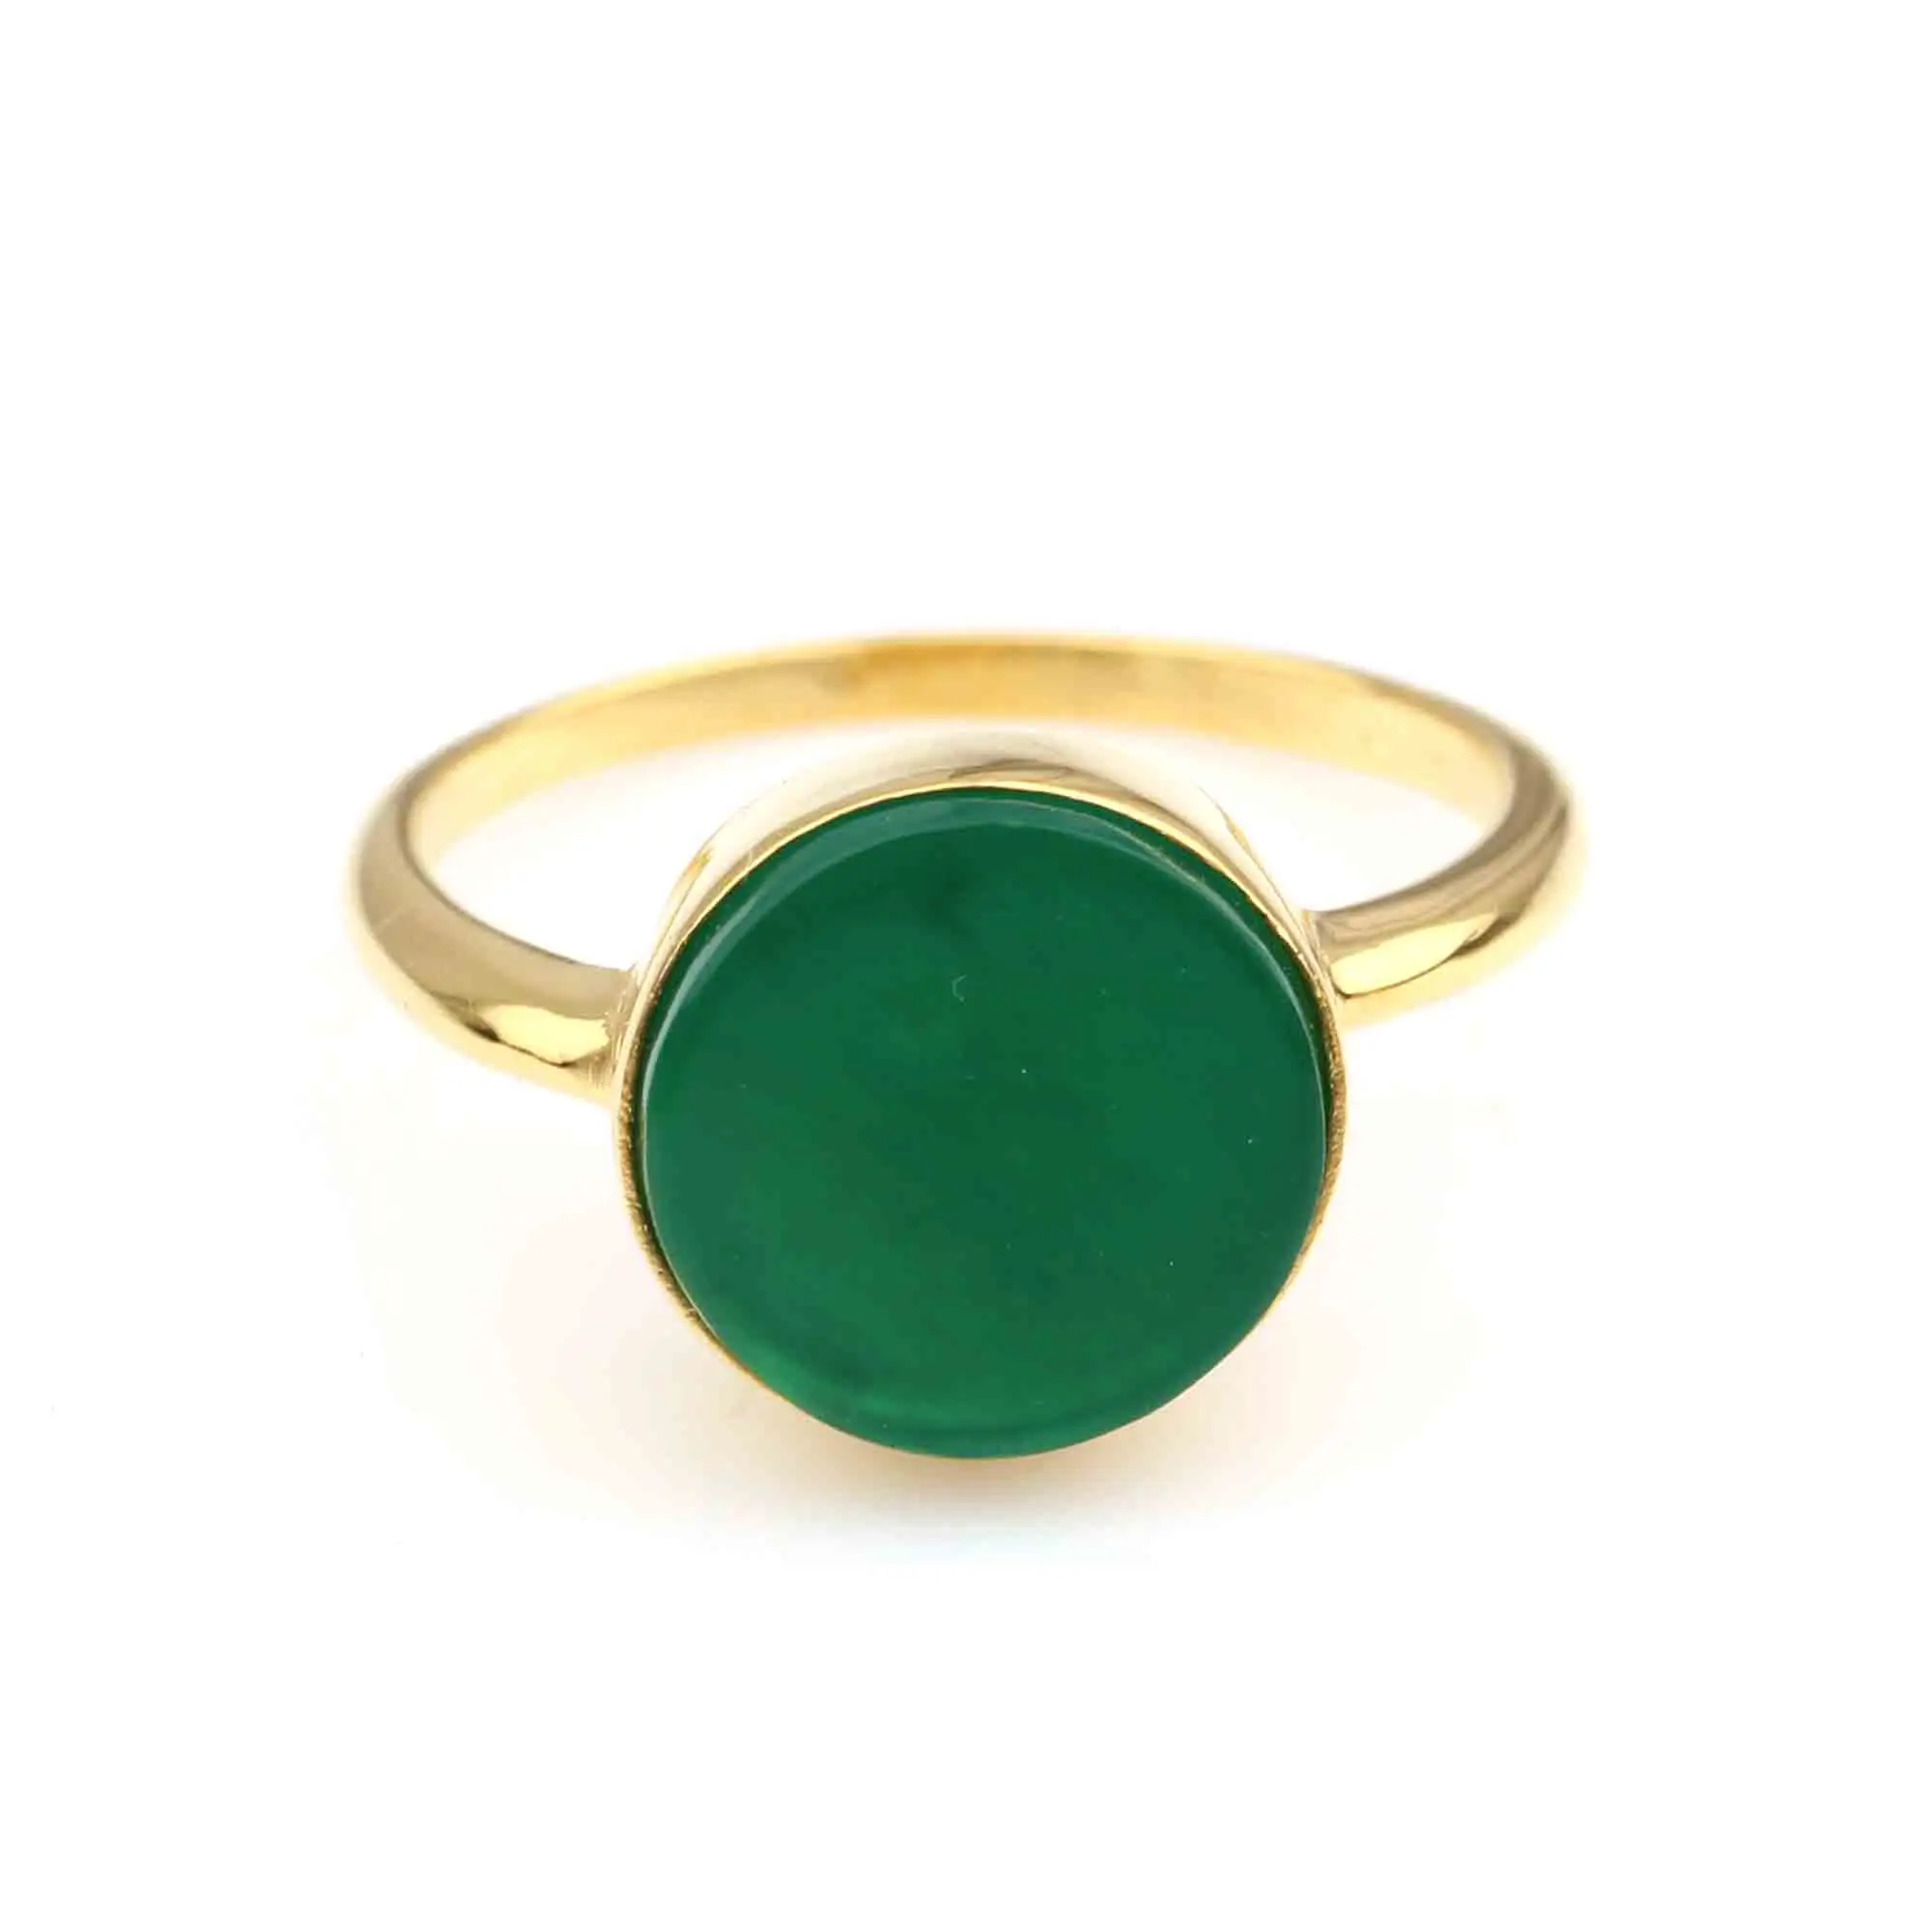 באיכות גבוהה עיצוב יפה יפה אבן וניקס טבעי אבן אוניקס ירוק מצופה זהב 925 משובצת כסף סטרלינג לנשים